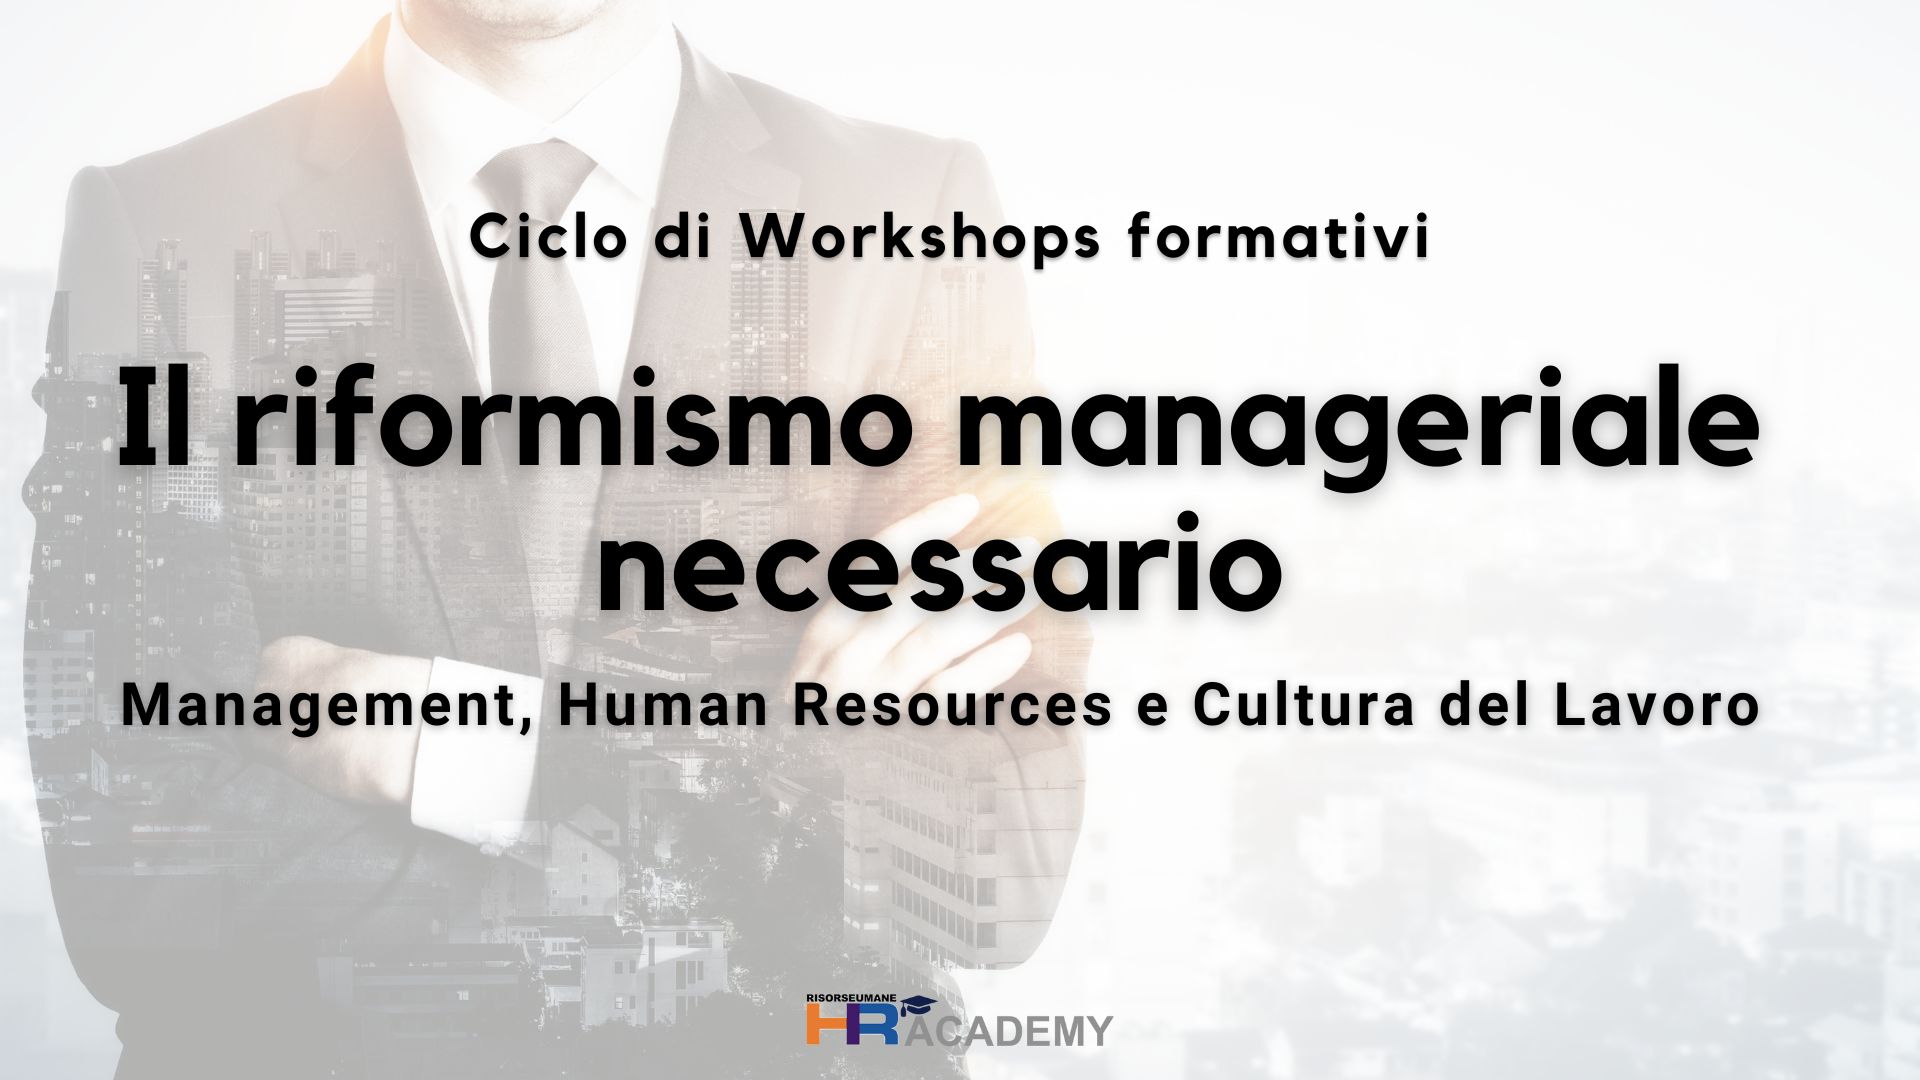 Ciclo formativo: Il riformismo manageriale necessario" Management, Human Resources e Cultura del Lavoro